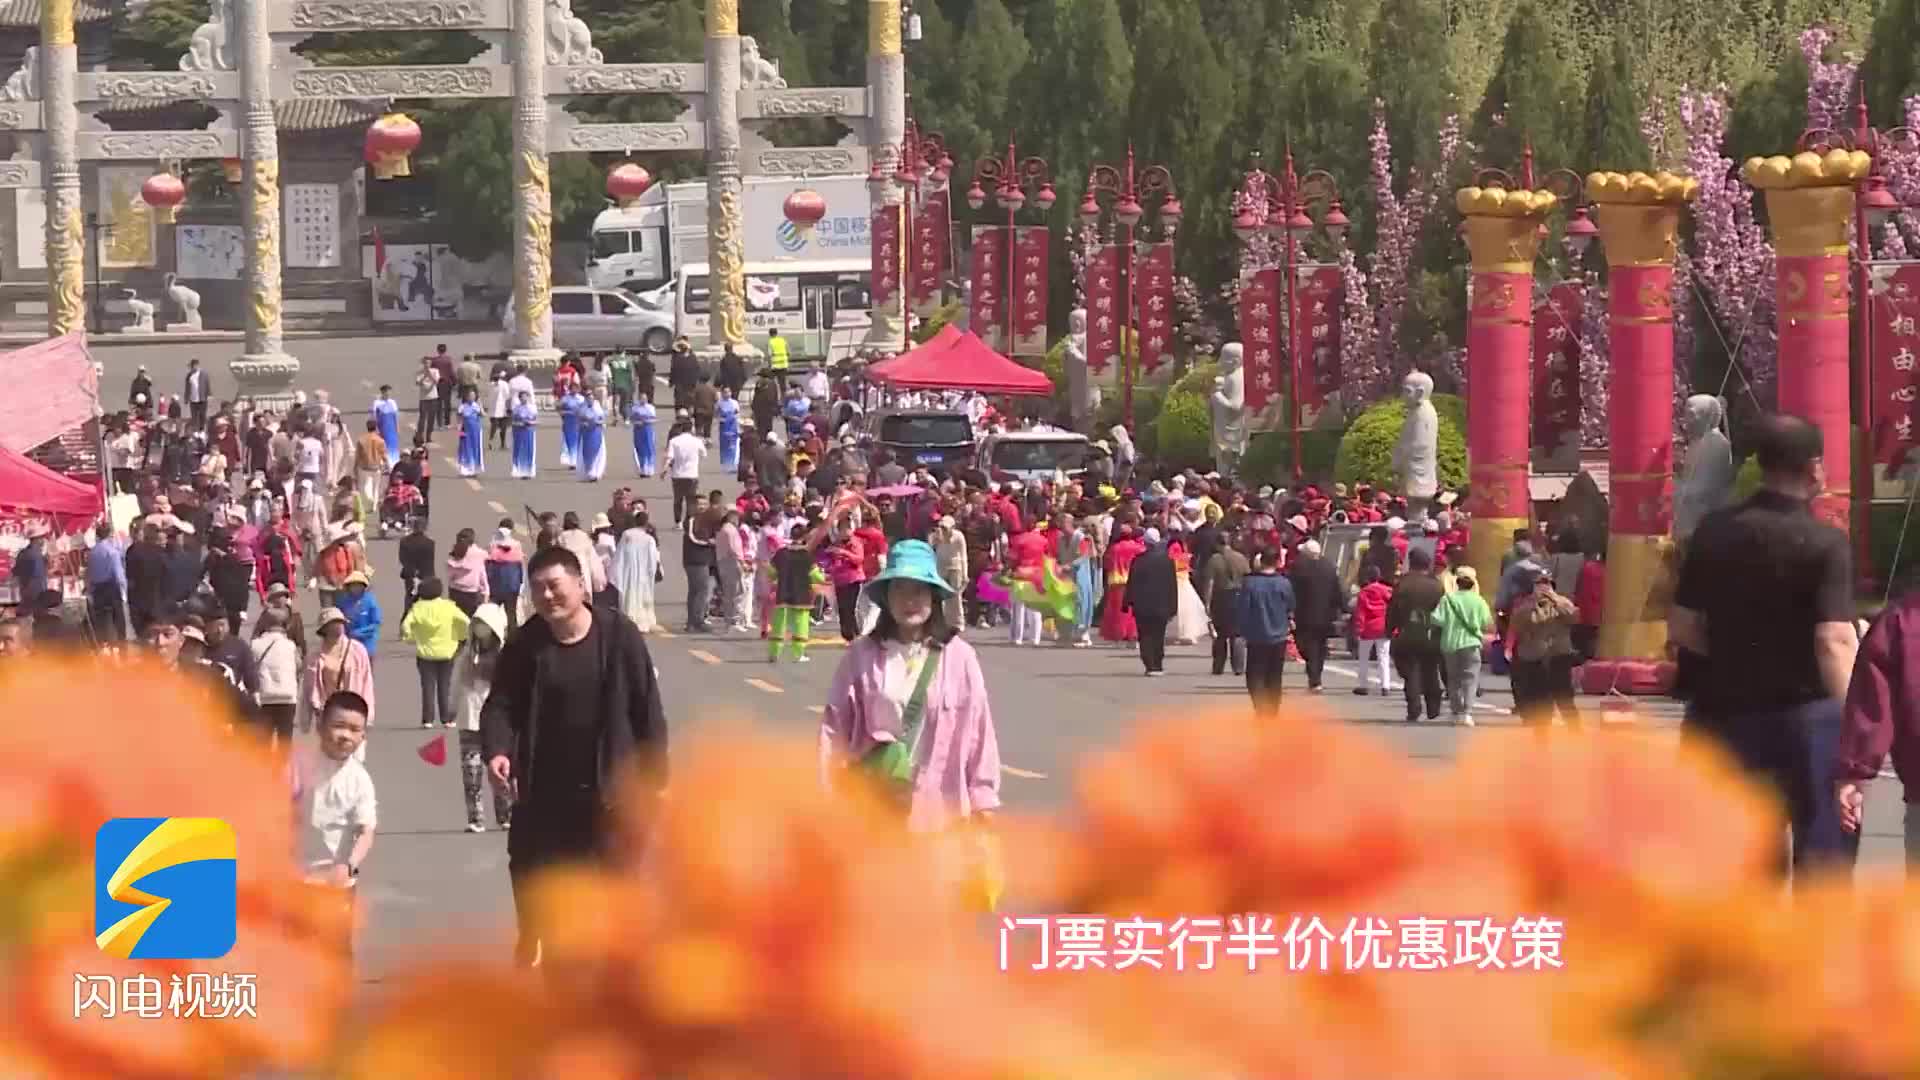 龙口南山春季庙会精彩开幕  游客体验多彩民俗盛宴